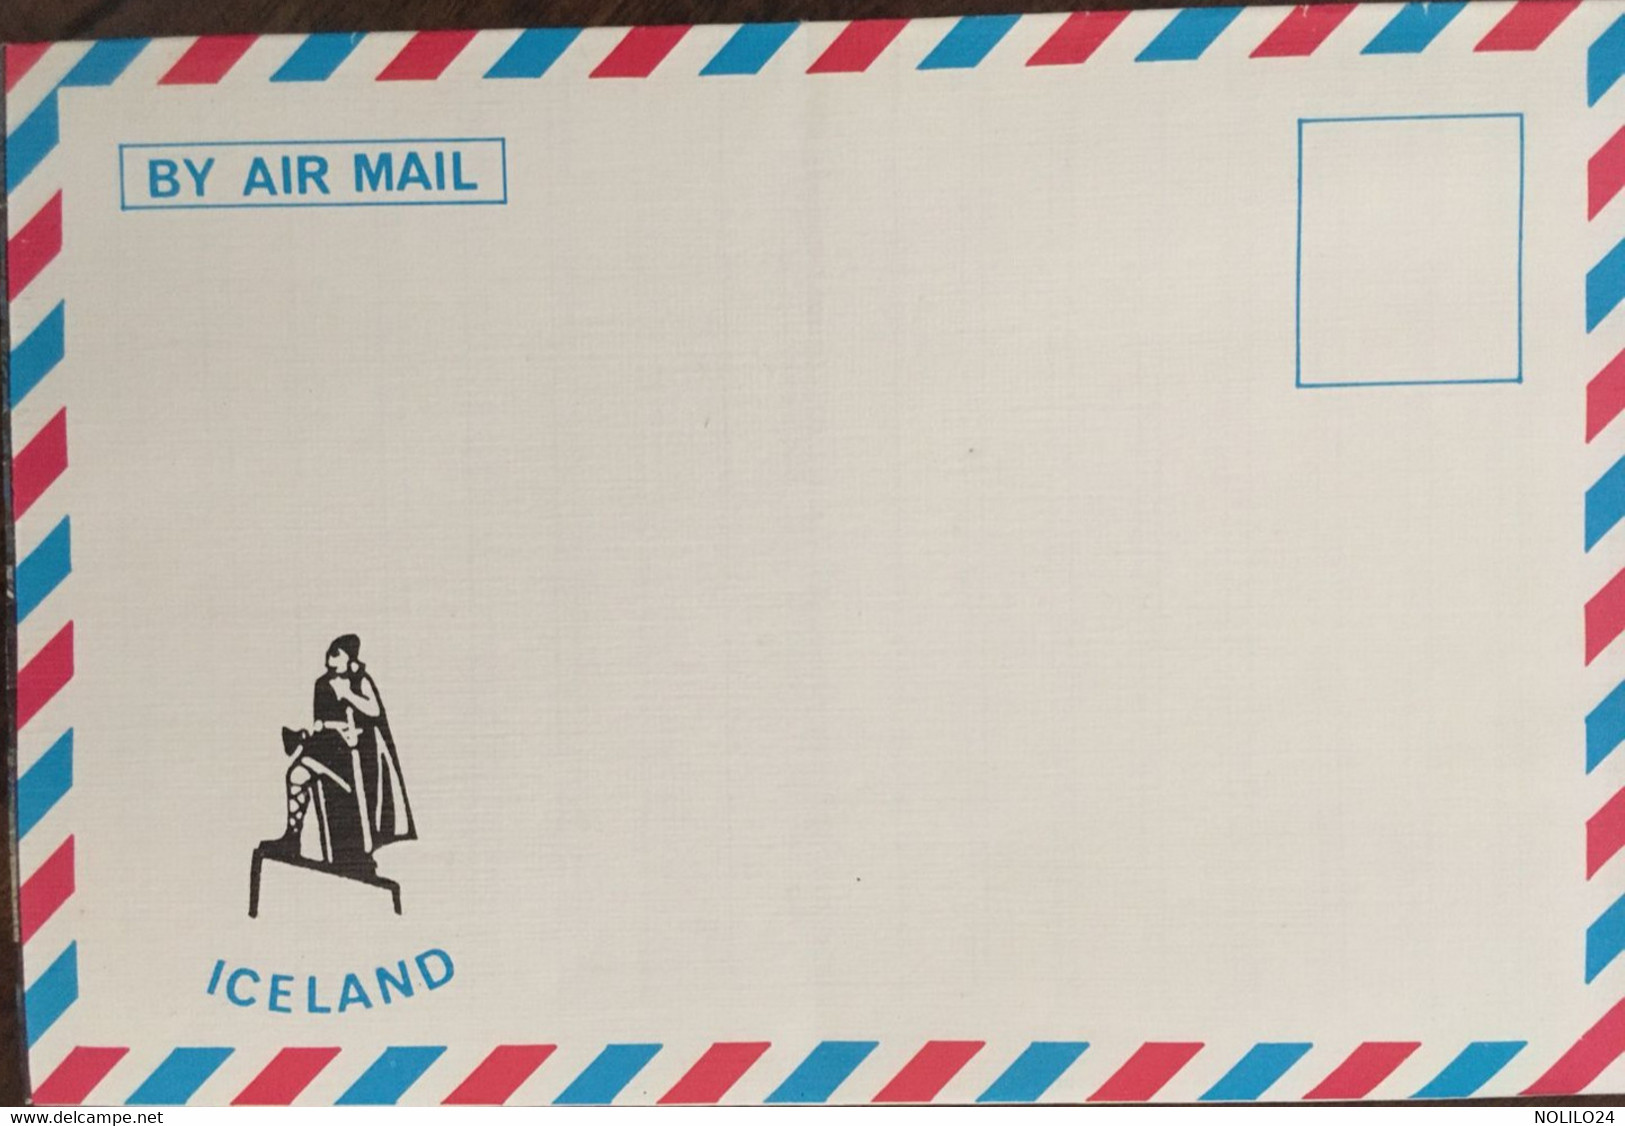 Enveloppe Dépliant Lettre Souvenir Touristique, Mývatn North Iceland Série "By Air Mail Iceland" N° 6 - Islanda